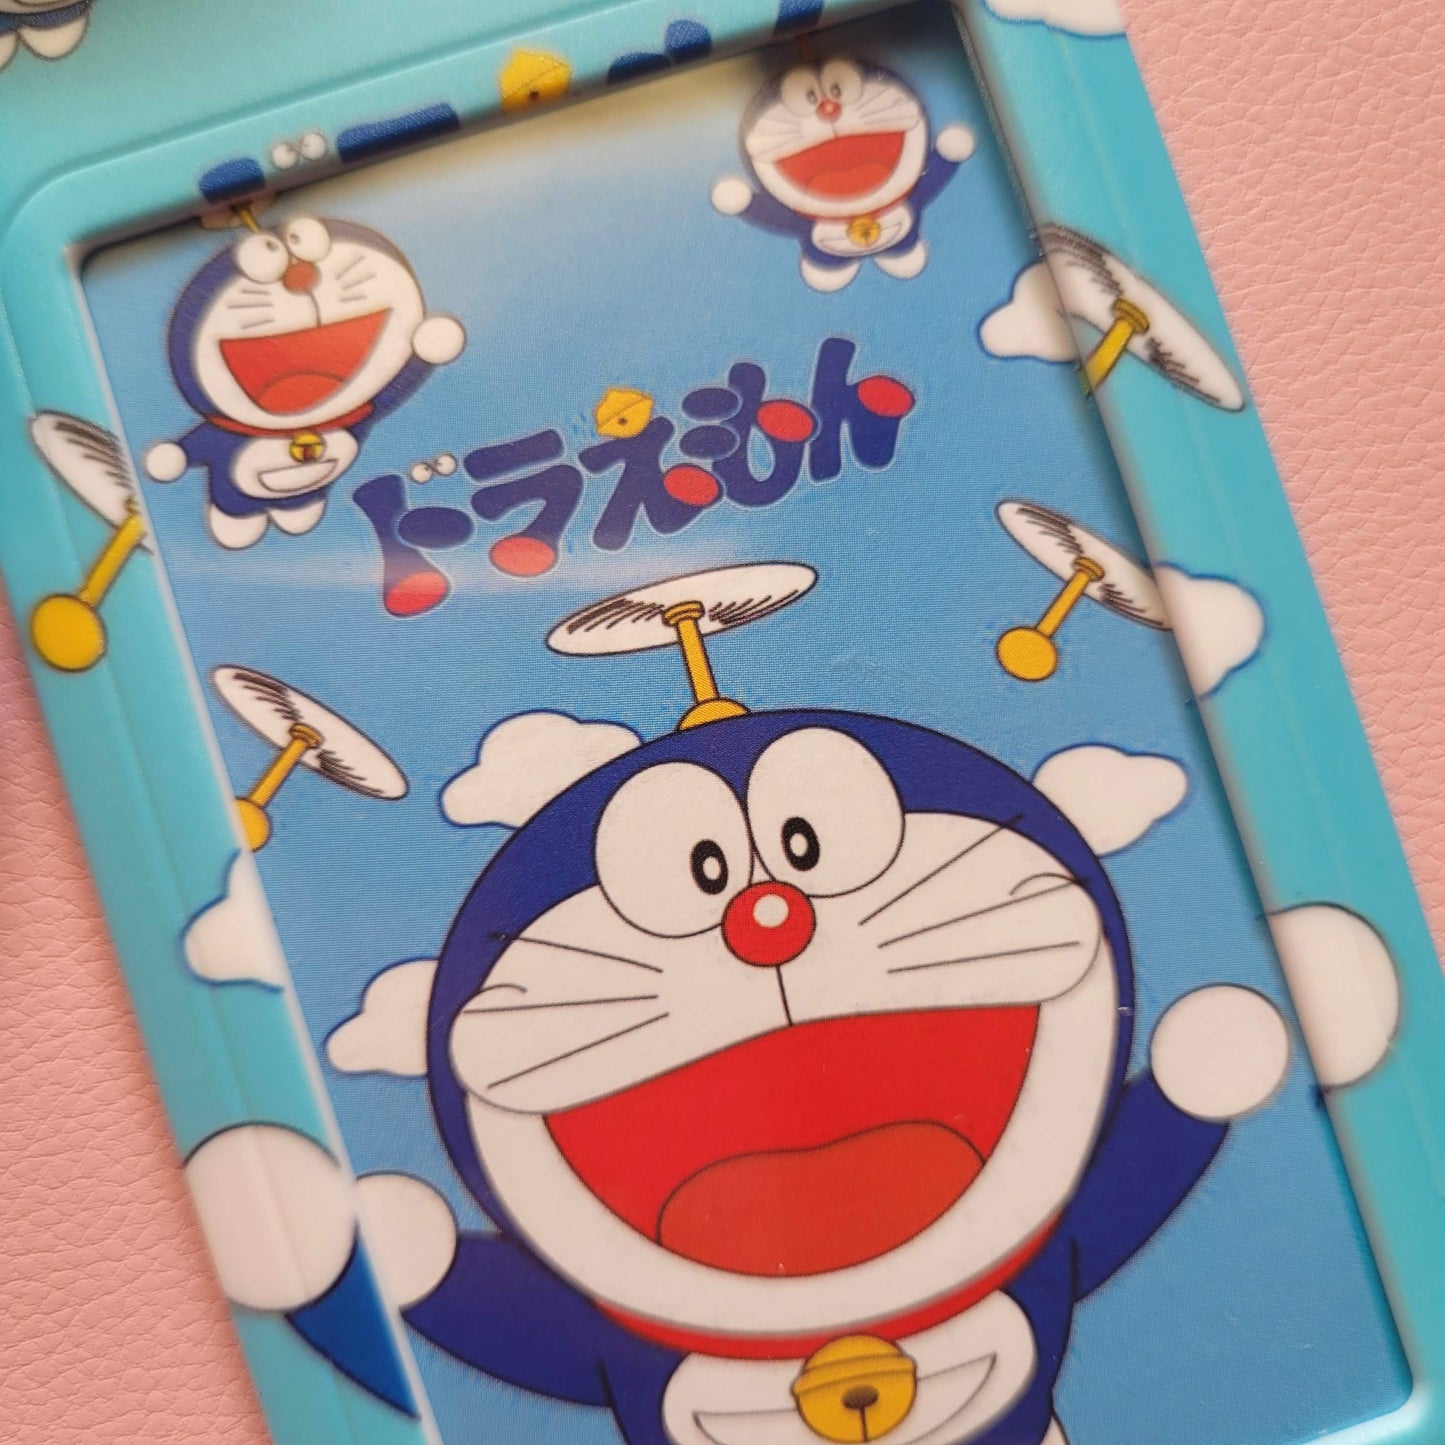 Portacarnet (lanyard) Doraemon